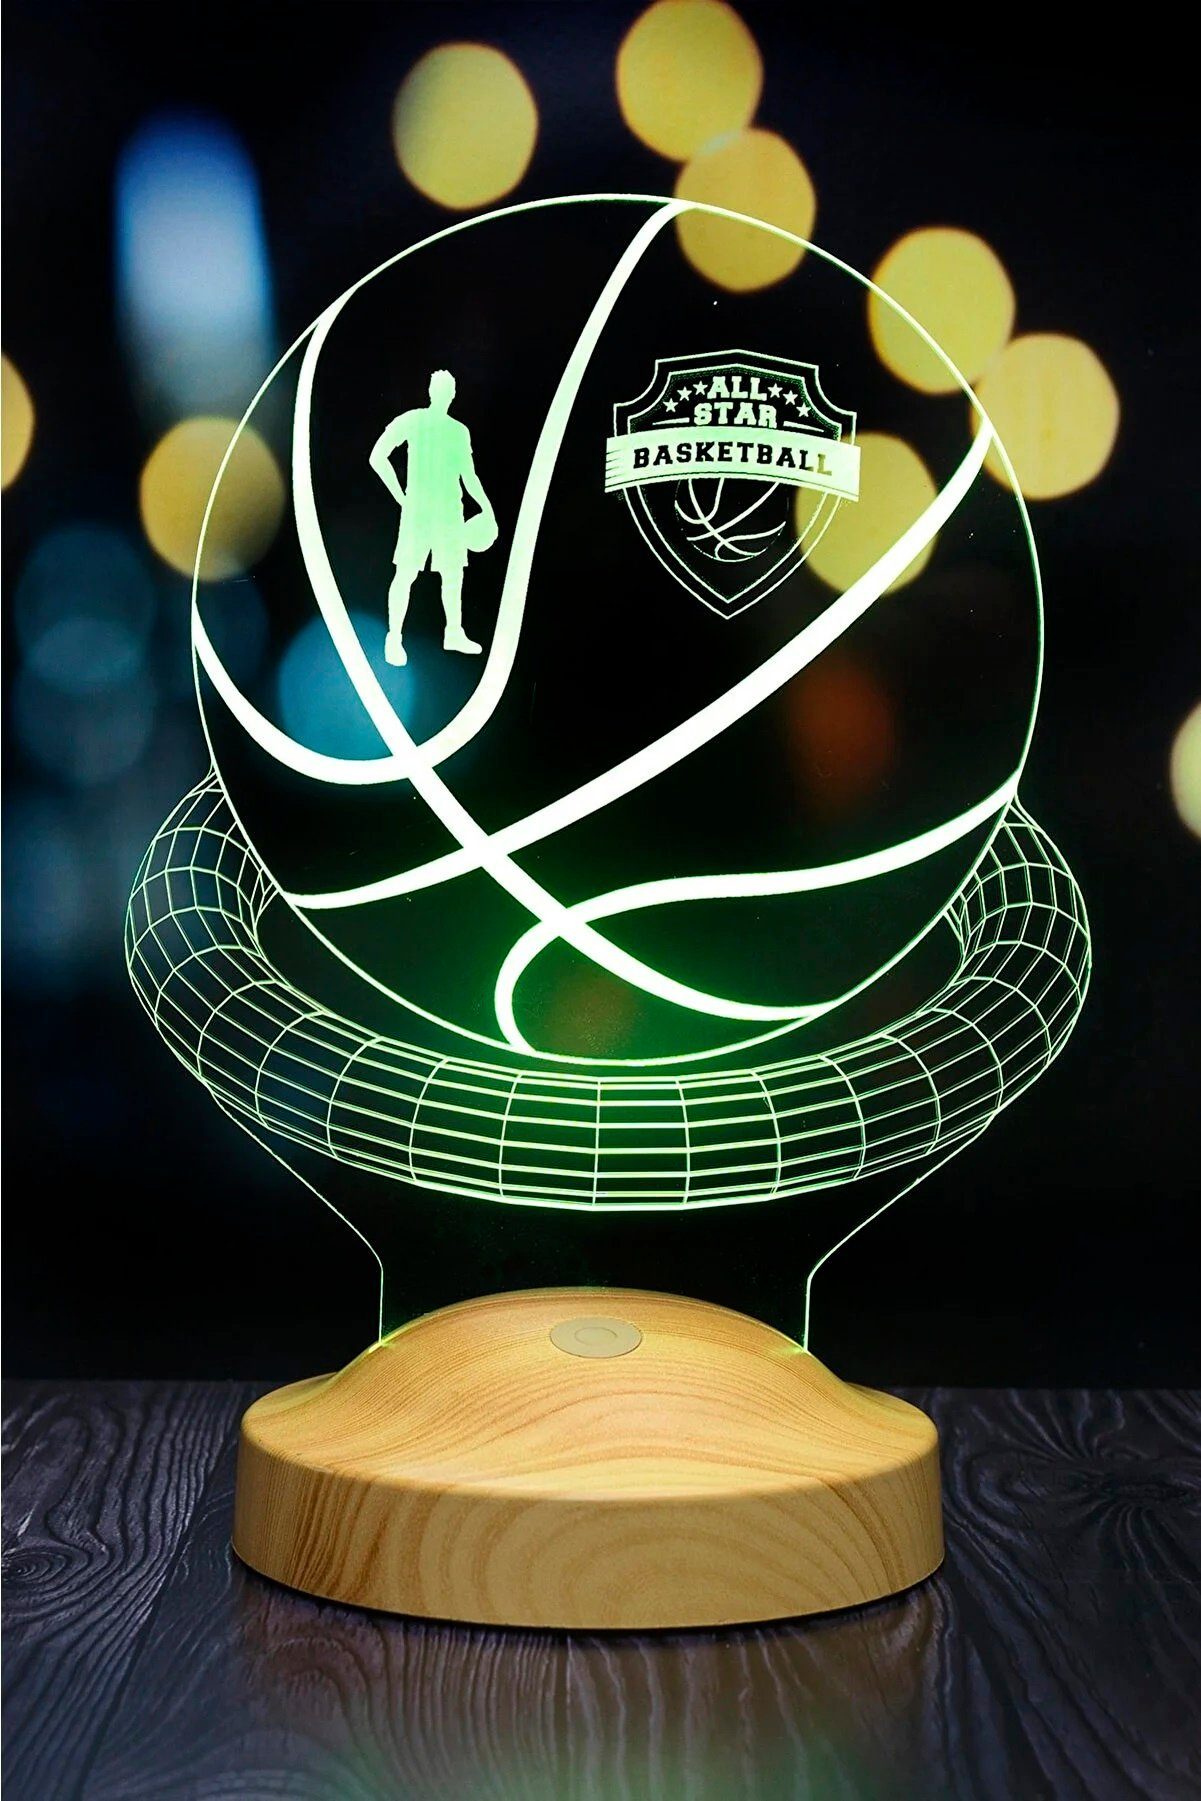 Geschenkelampe LED Nachttischlampe Basketball 3D Gravur Geschenk für Basketball Liebhaber, Leuchte 7 Farben fest integriert, Jungen, Männer, Geschenk für Basketball Spieler